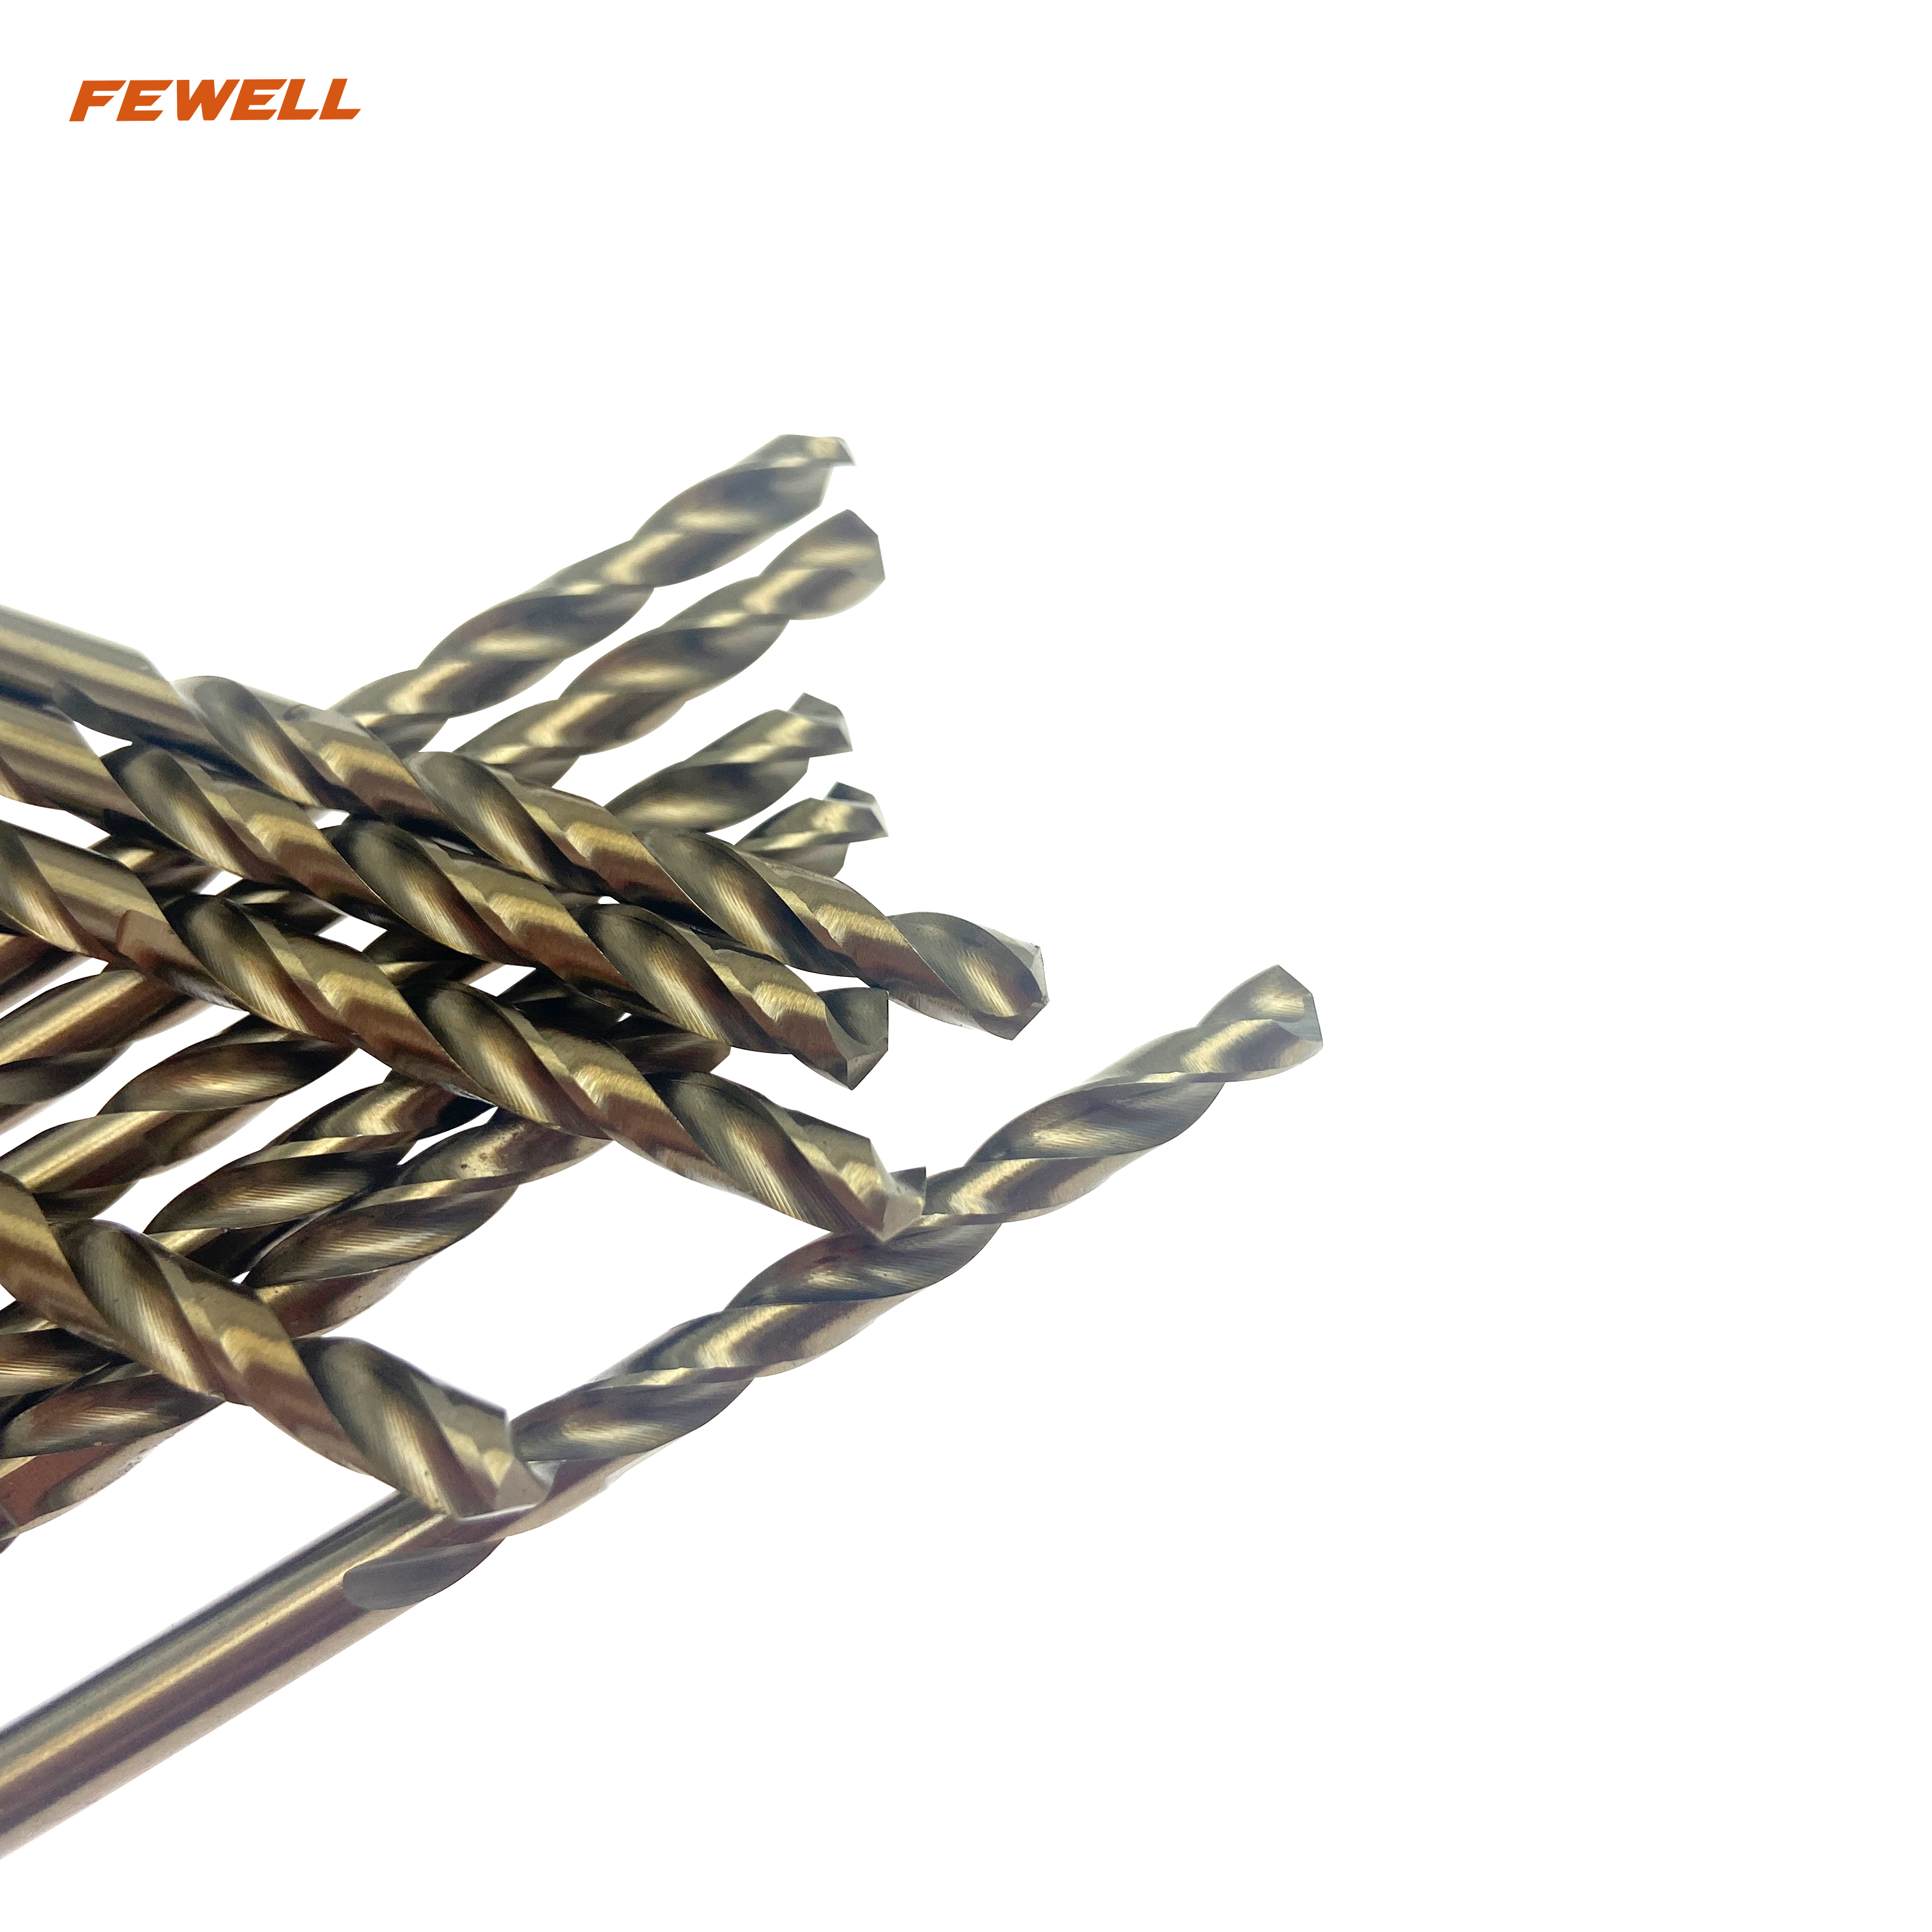 Brocas helicoidales HSS con mango cilíndrico M35 de 4 mm para taladrar metal, acero inoxidable y acero inoxidable